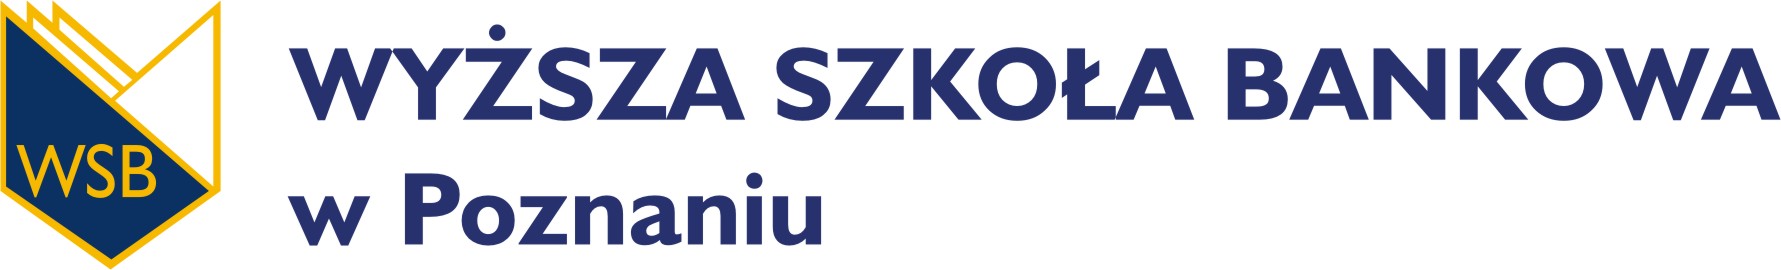 Wyższa Szkoła Bankowa w Poznaniu